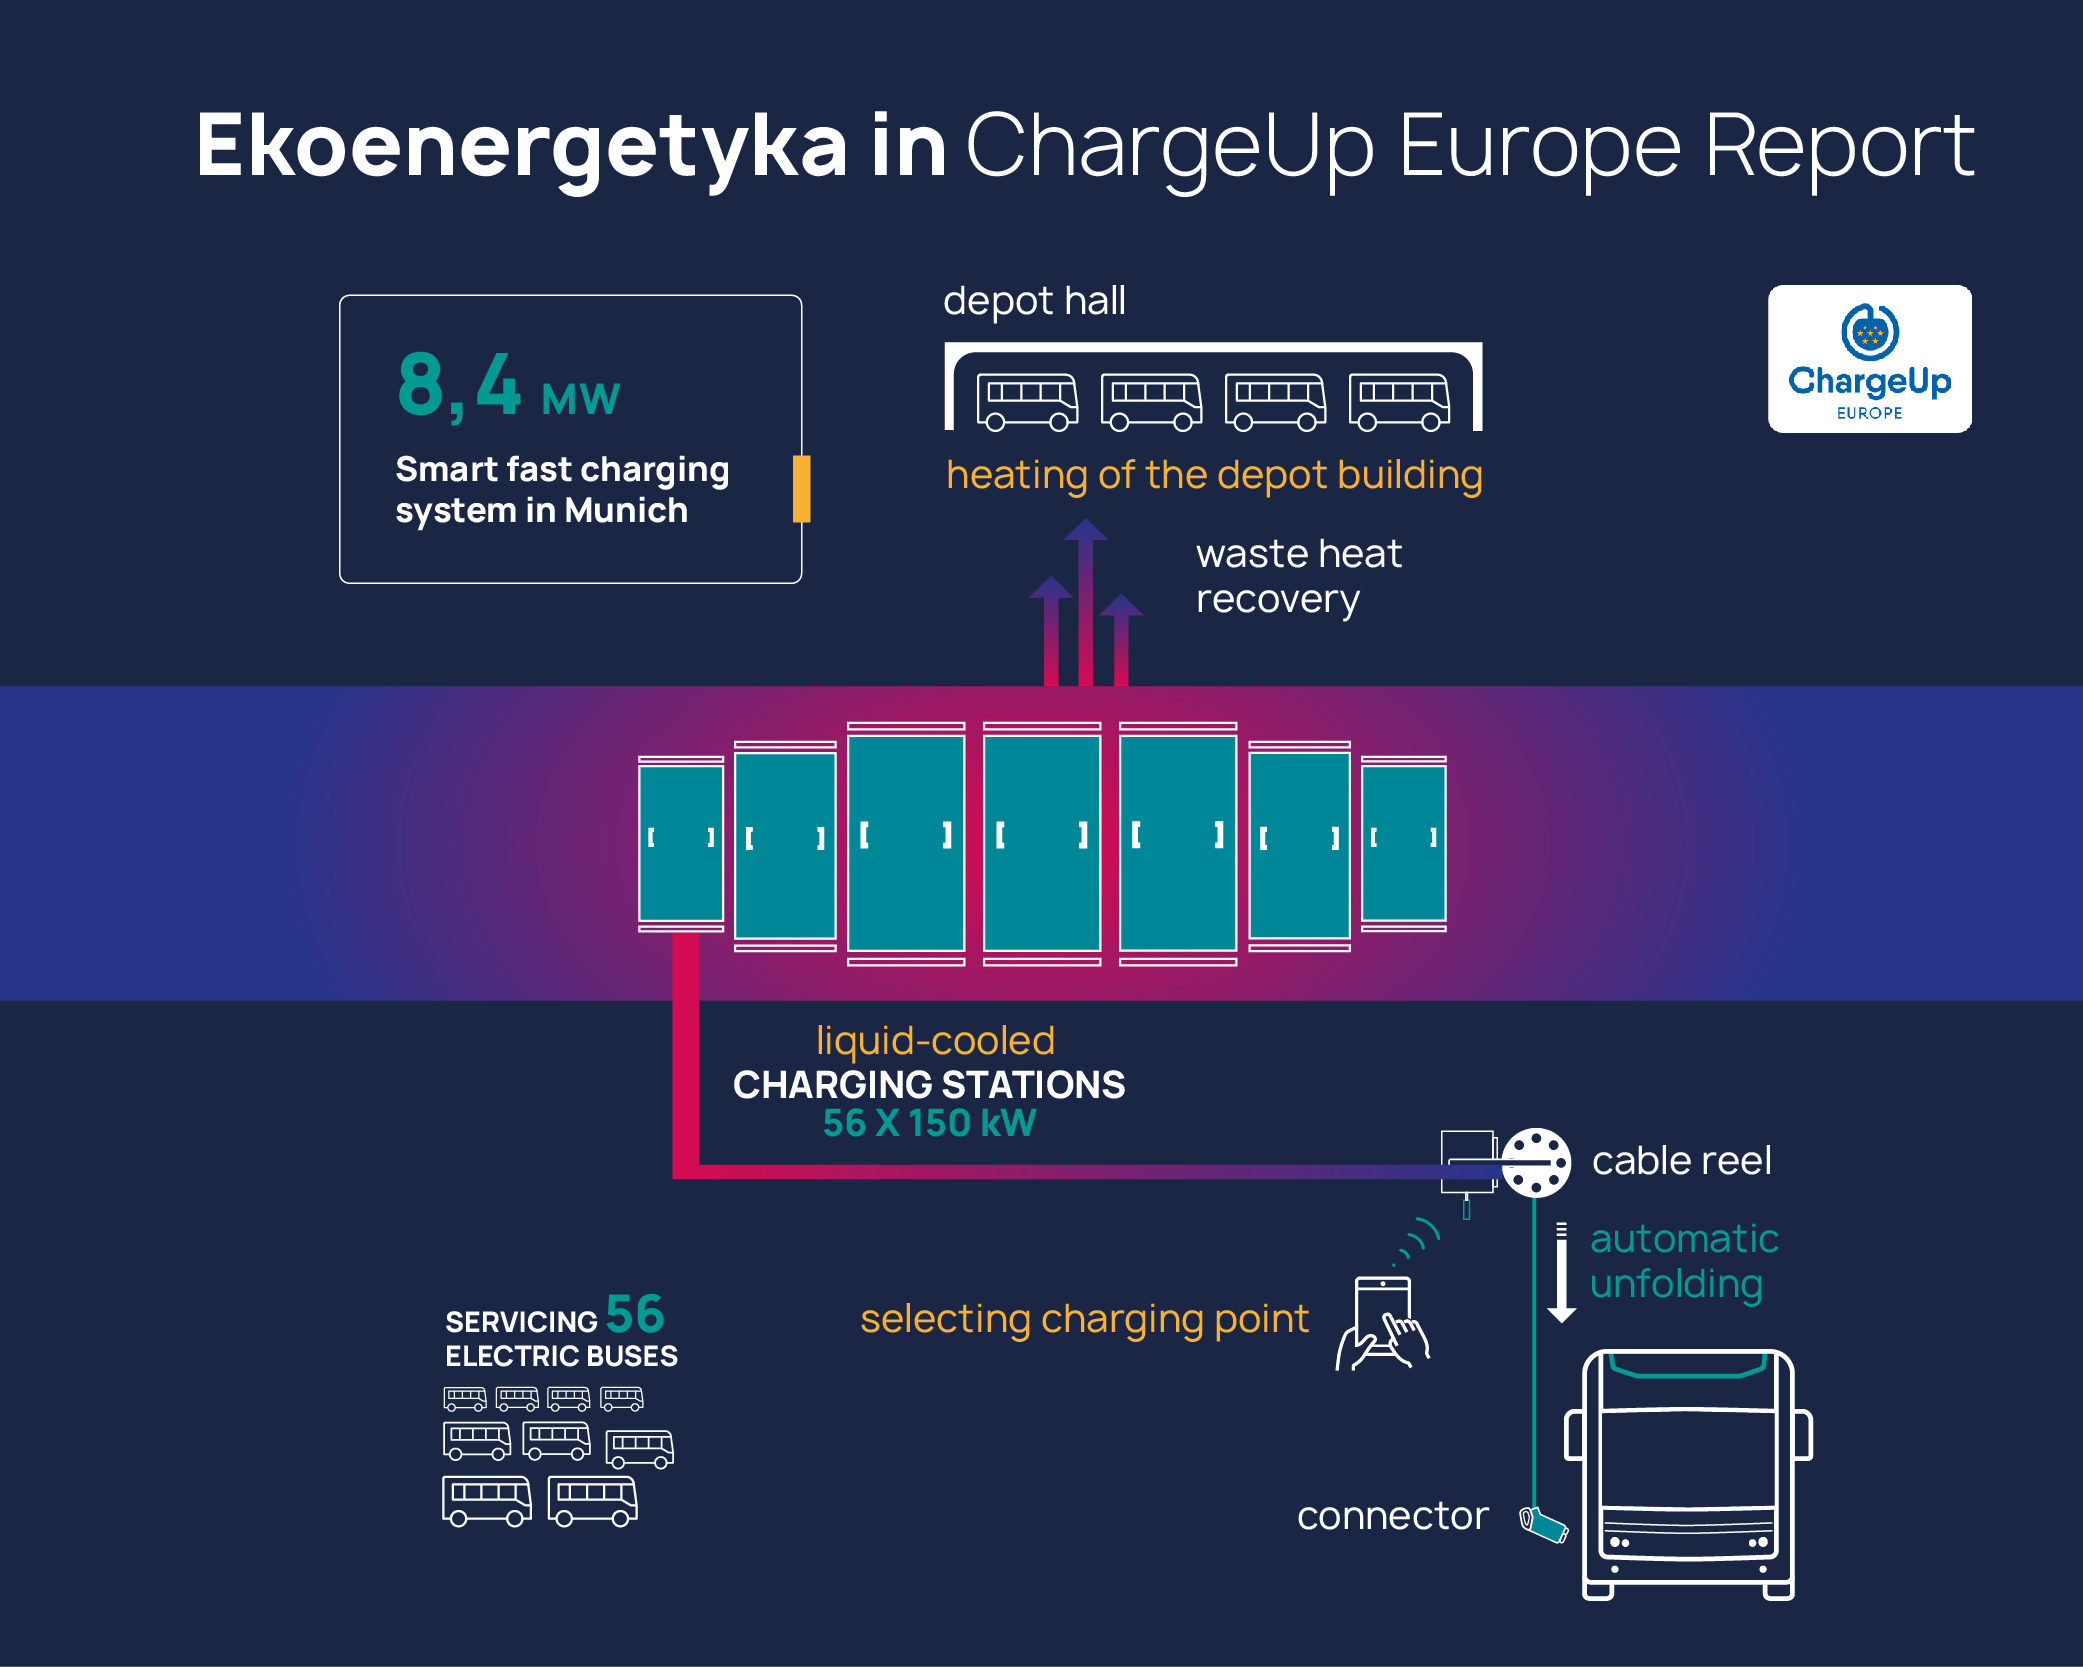 chargeup report, Ekoenergetyka